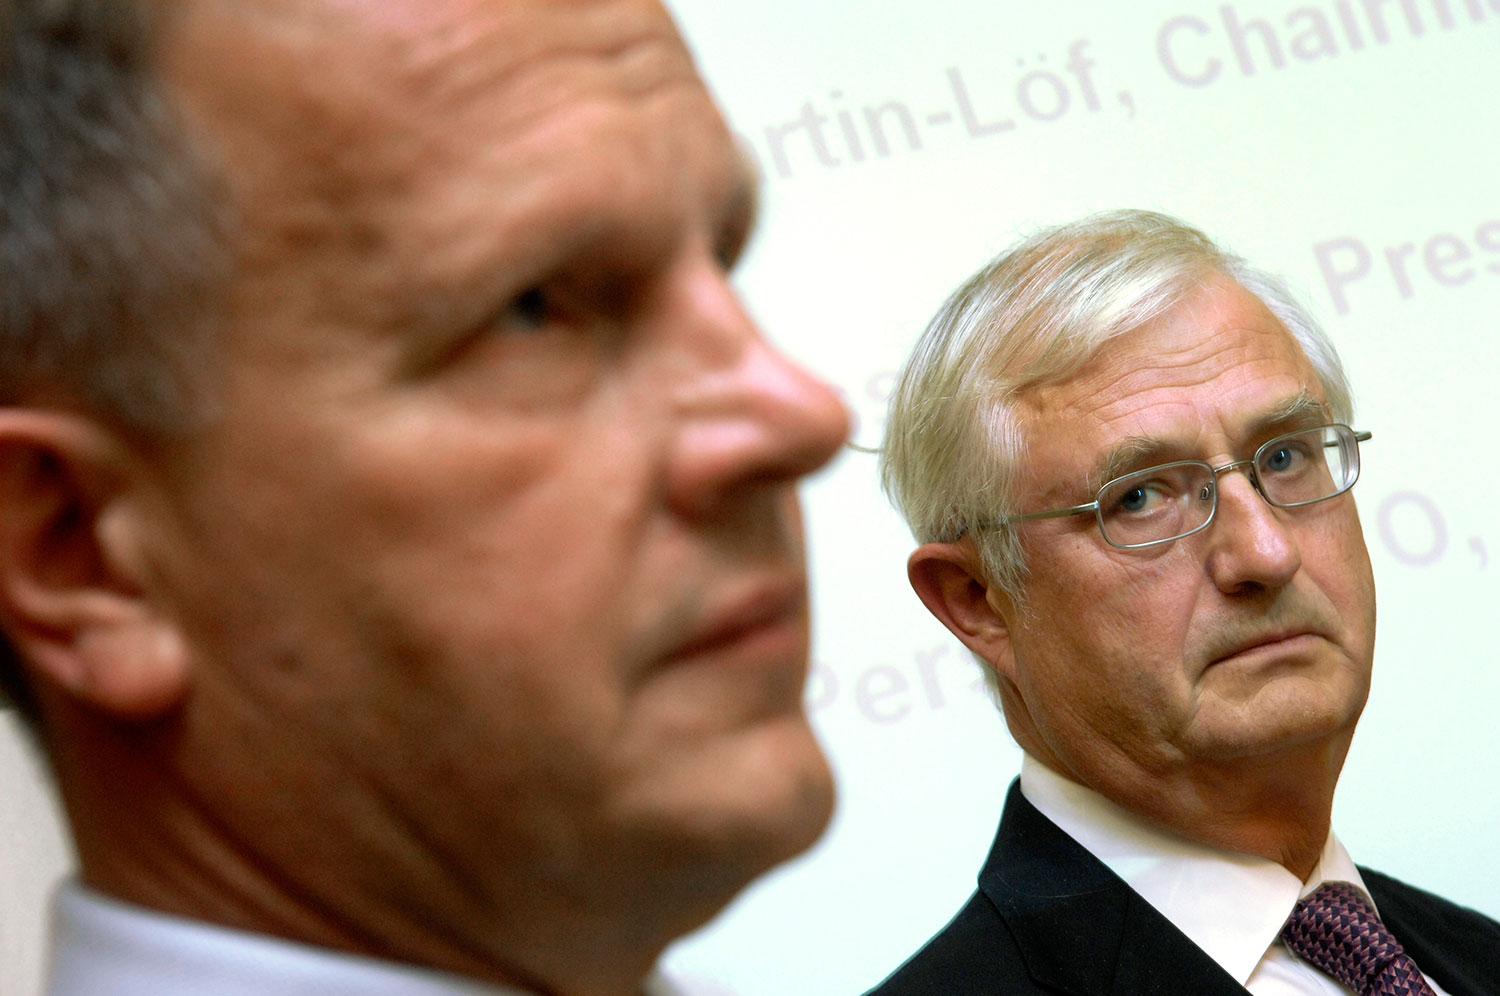 HÖGT FALL Sverker Martin-Löf, till höger, förlorar flera toppuppdrag efter att bland annat ha flugit sina jakthundar med SCA:s privatjet. Till vänster: Jan Johansson, vd och koncernchef SCA, som avgick i slutet av januari..